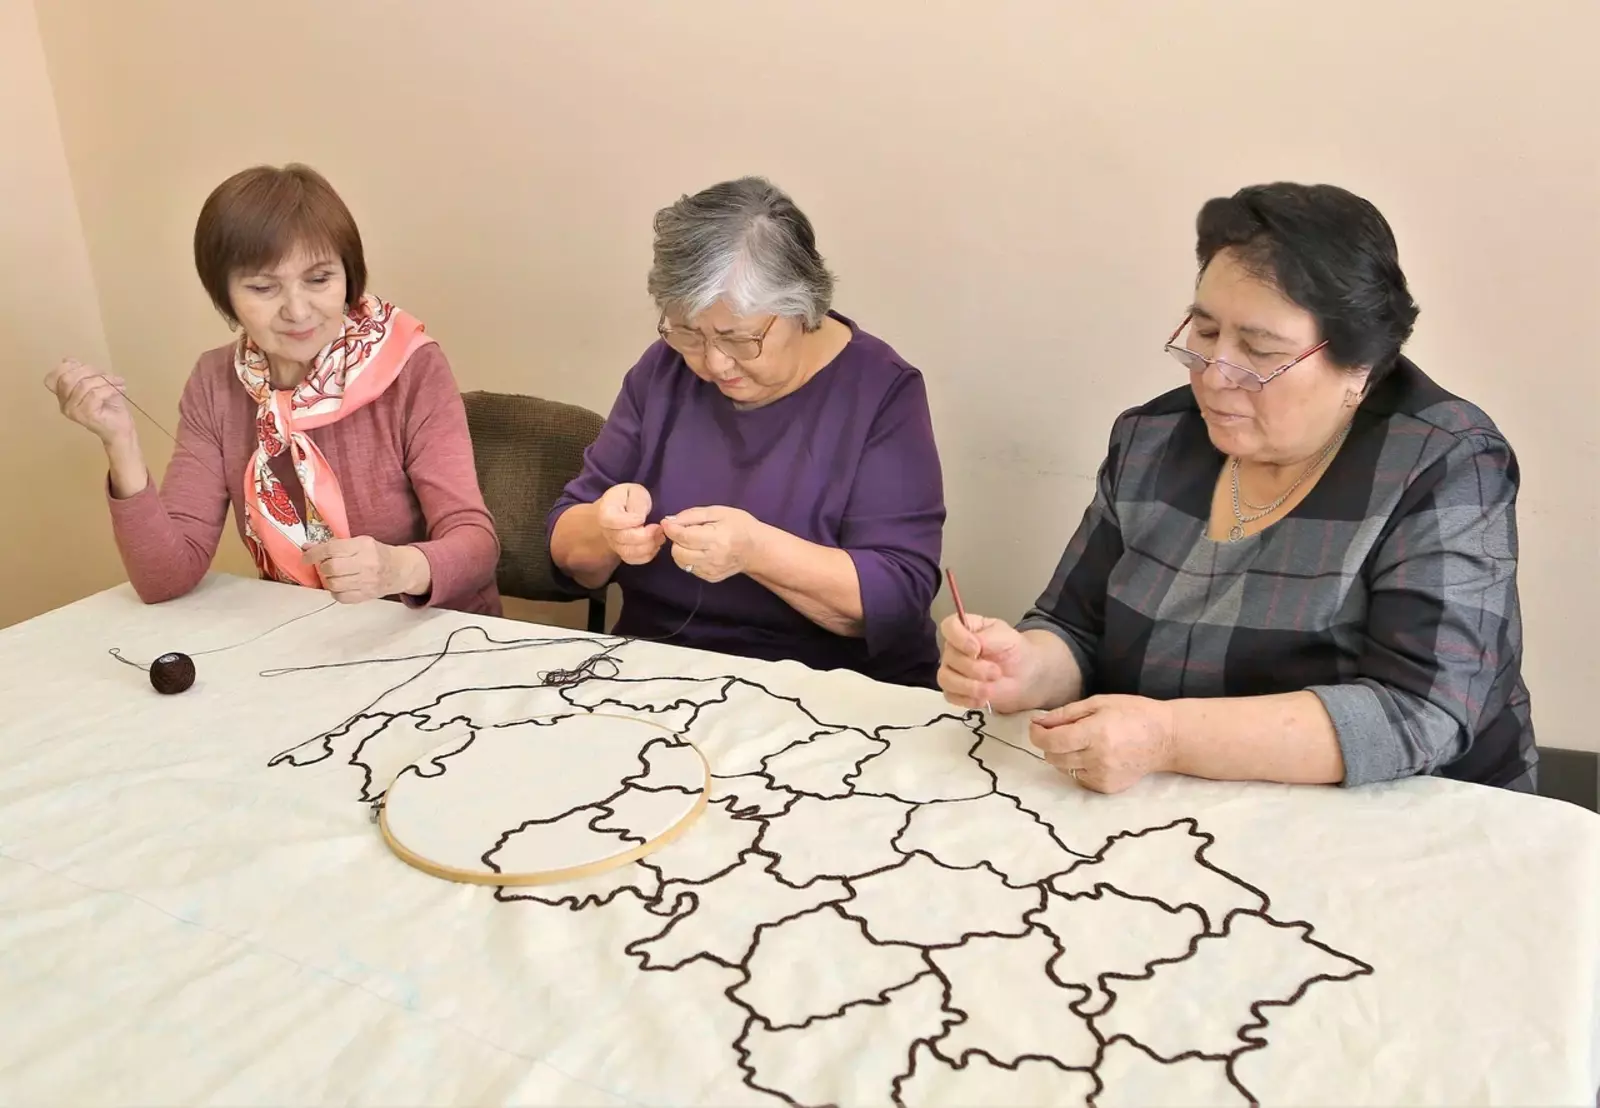 В Башкирии мастерицы вручную вышьют карту республики